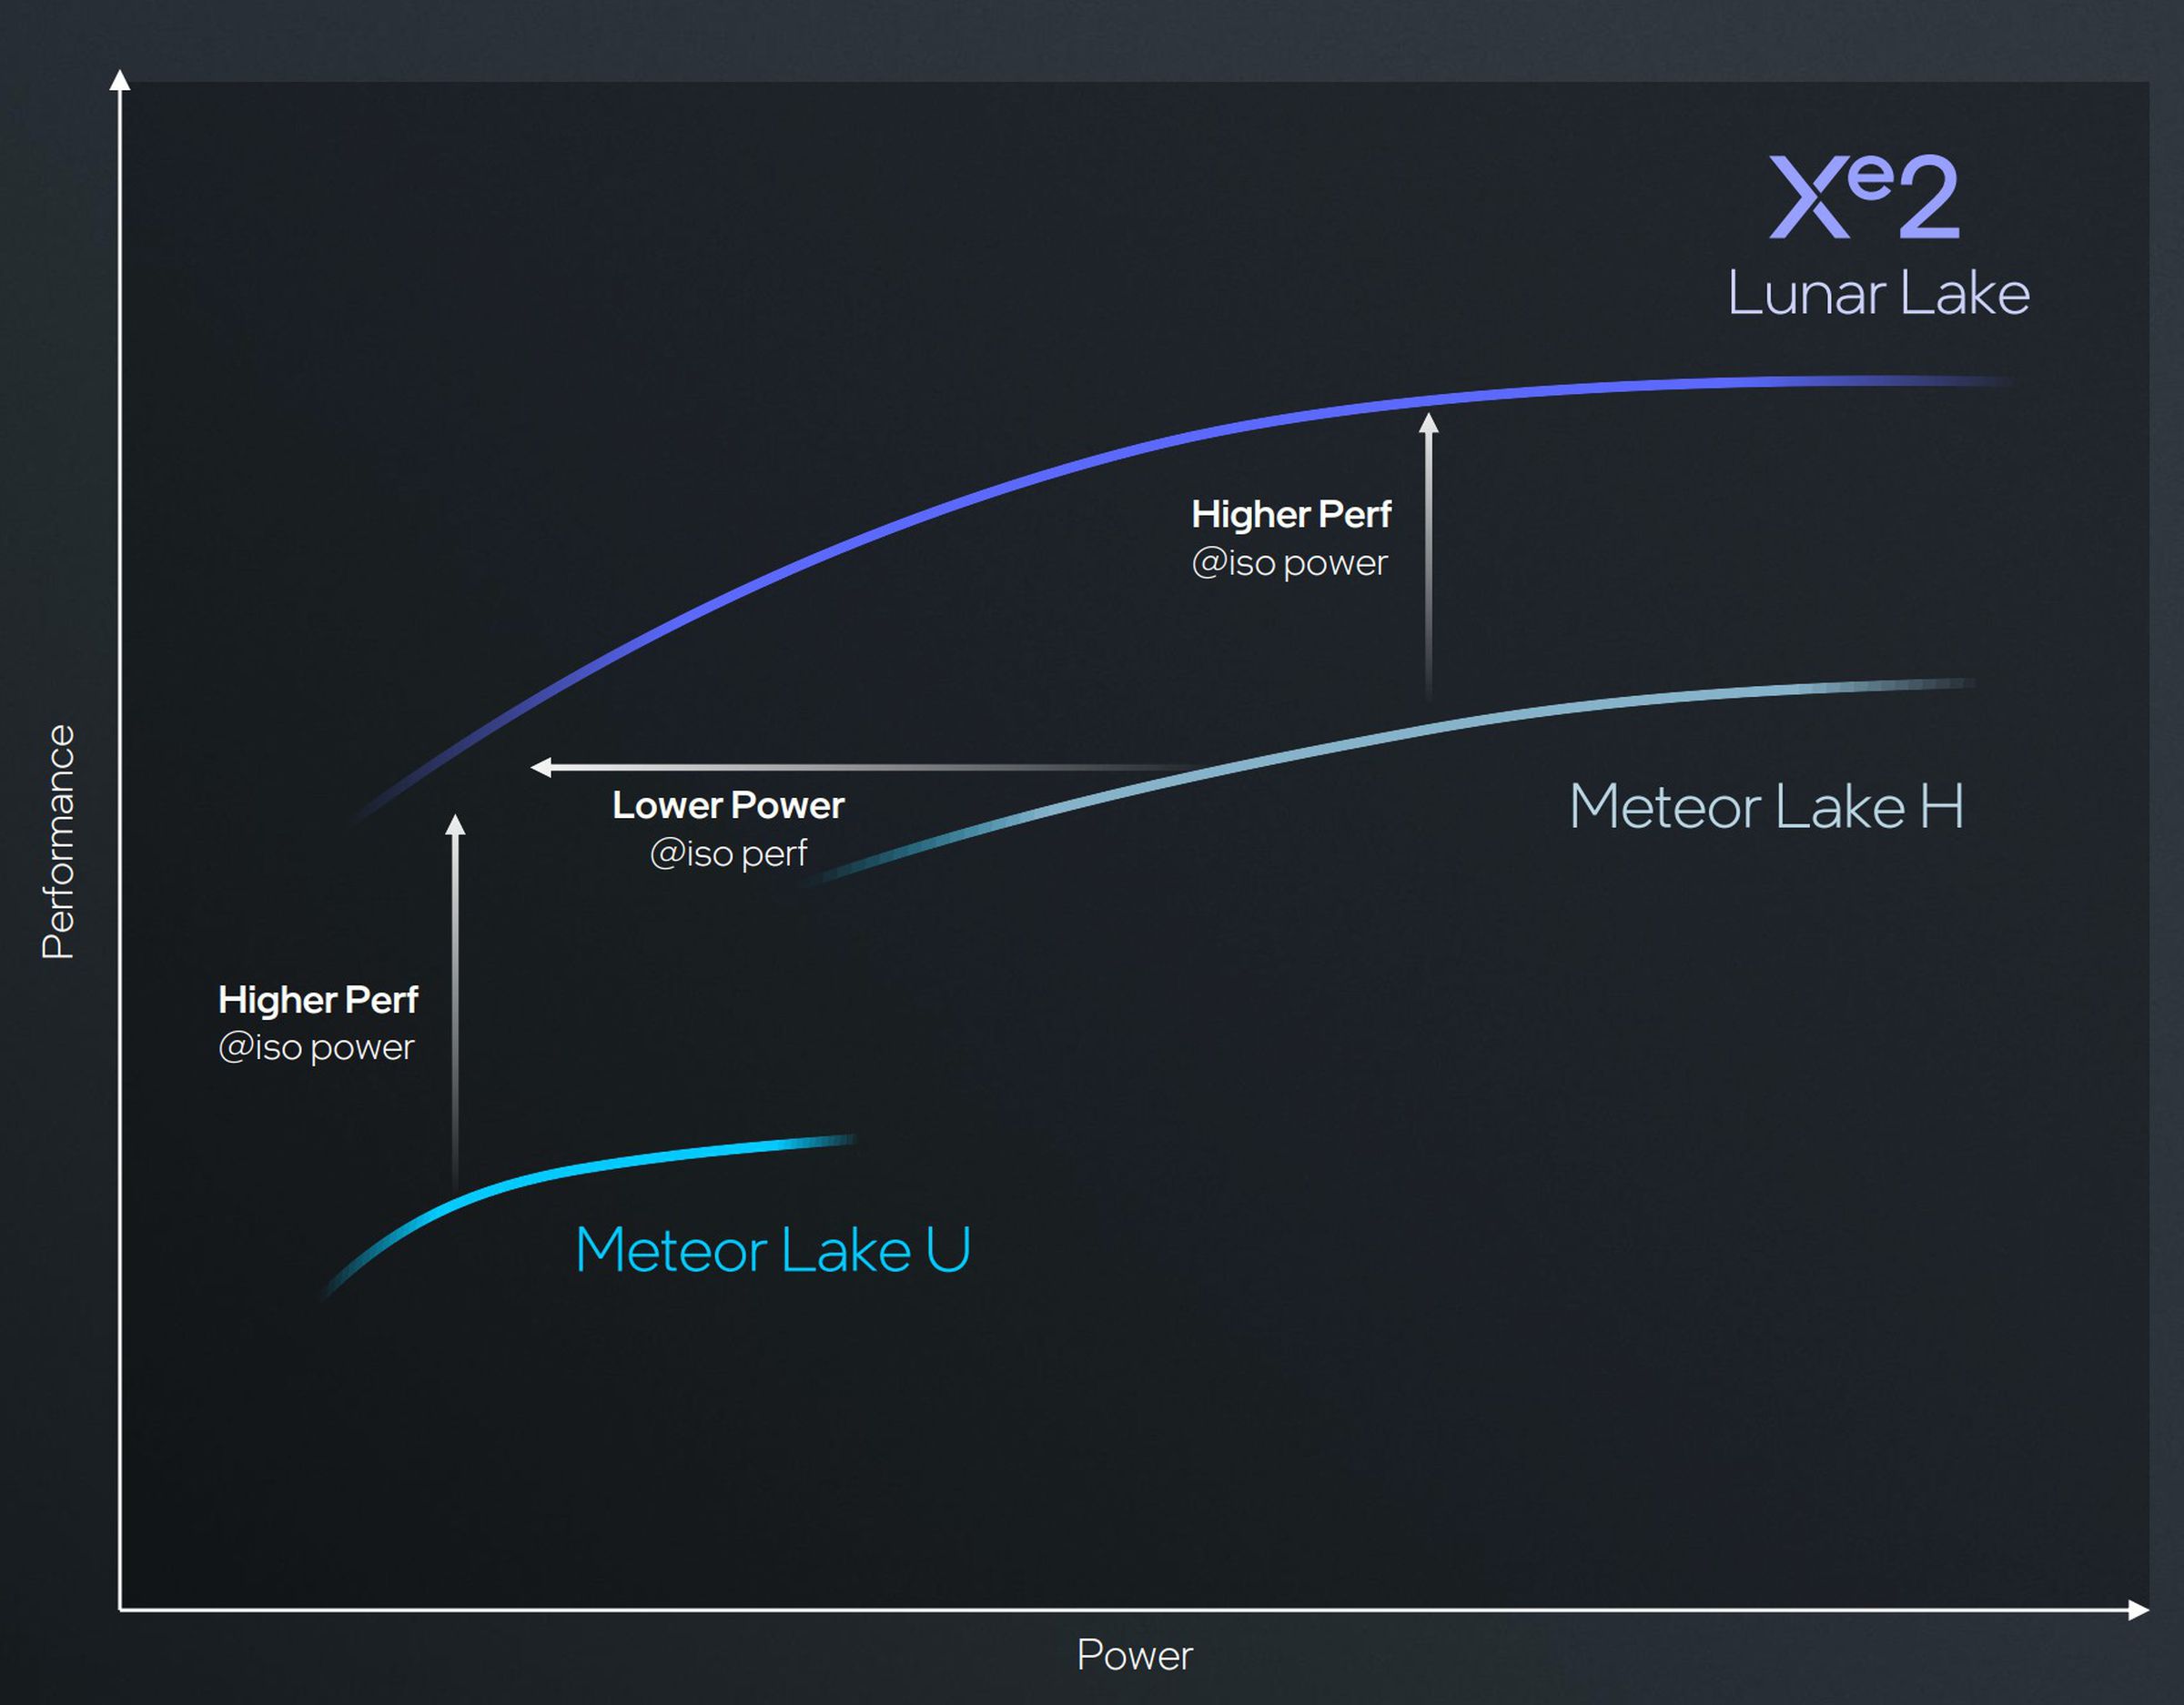 Xe2 replaces both Meteor Lake H and Meteor Lake U GPUs. 